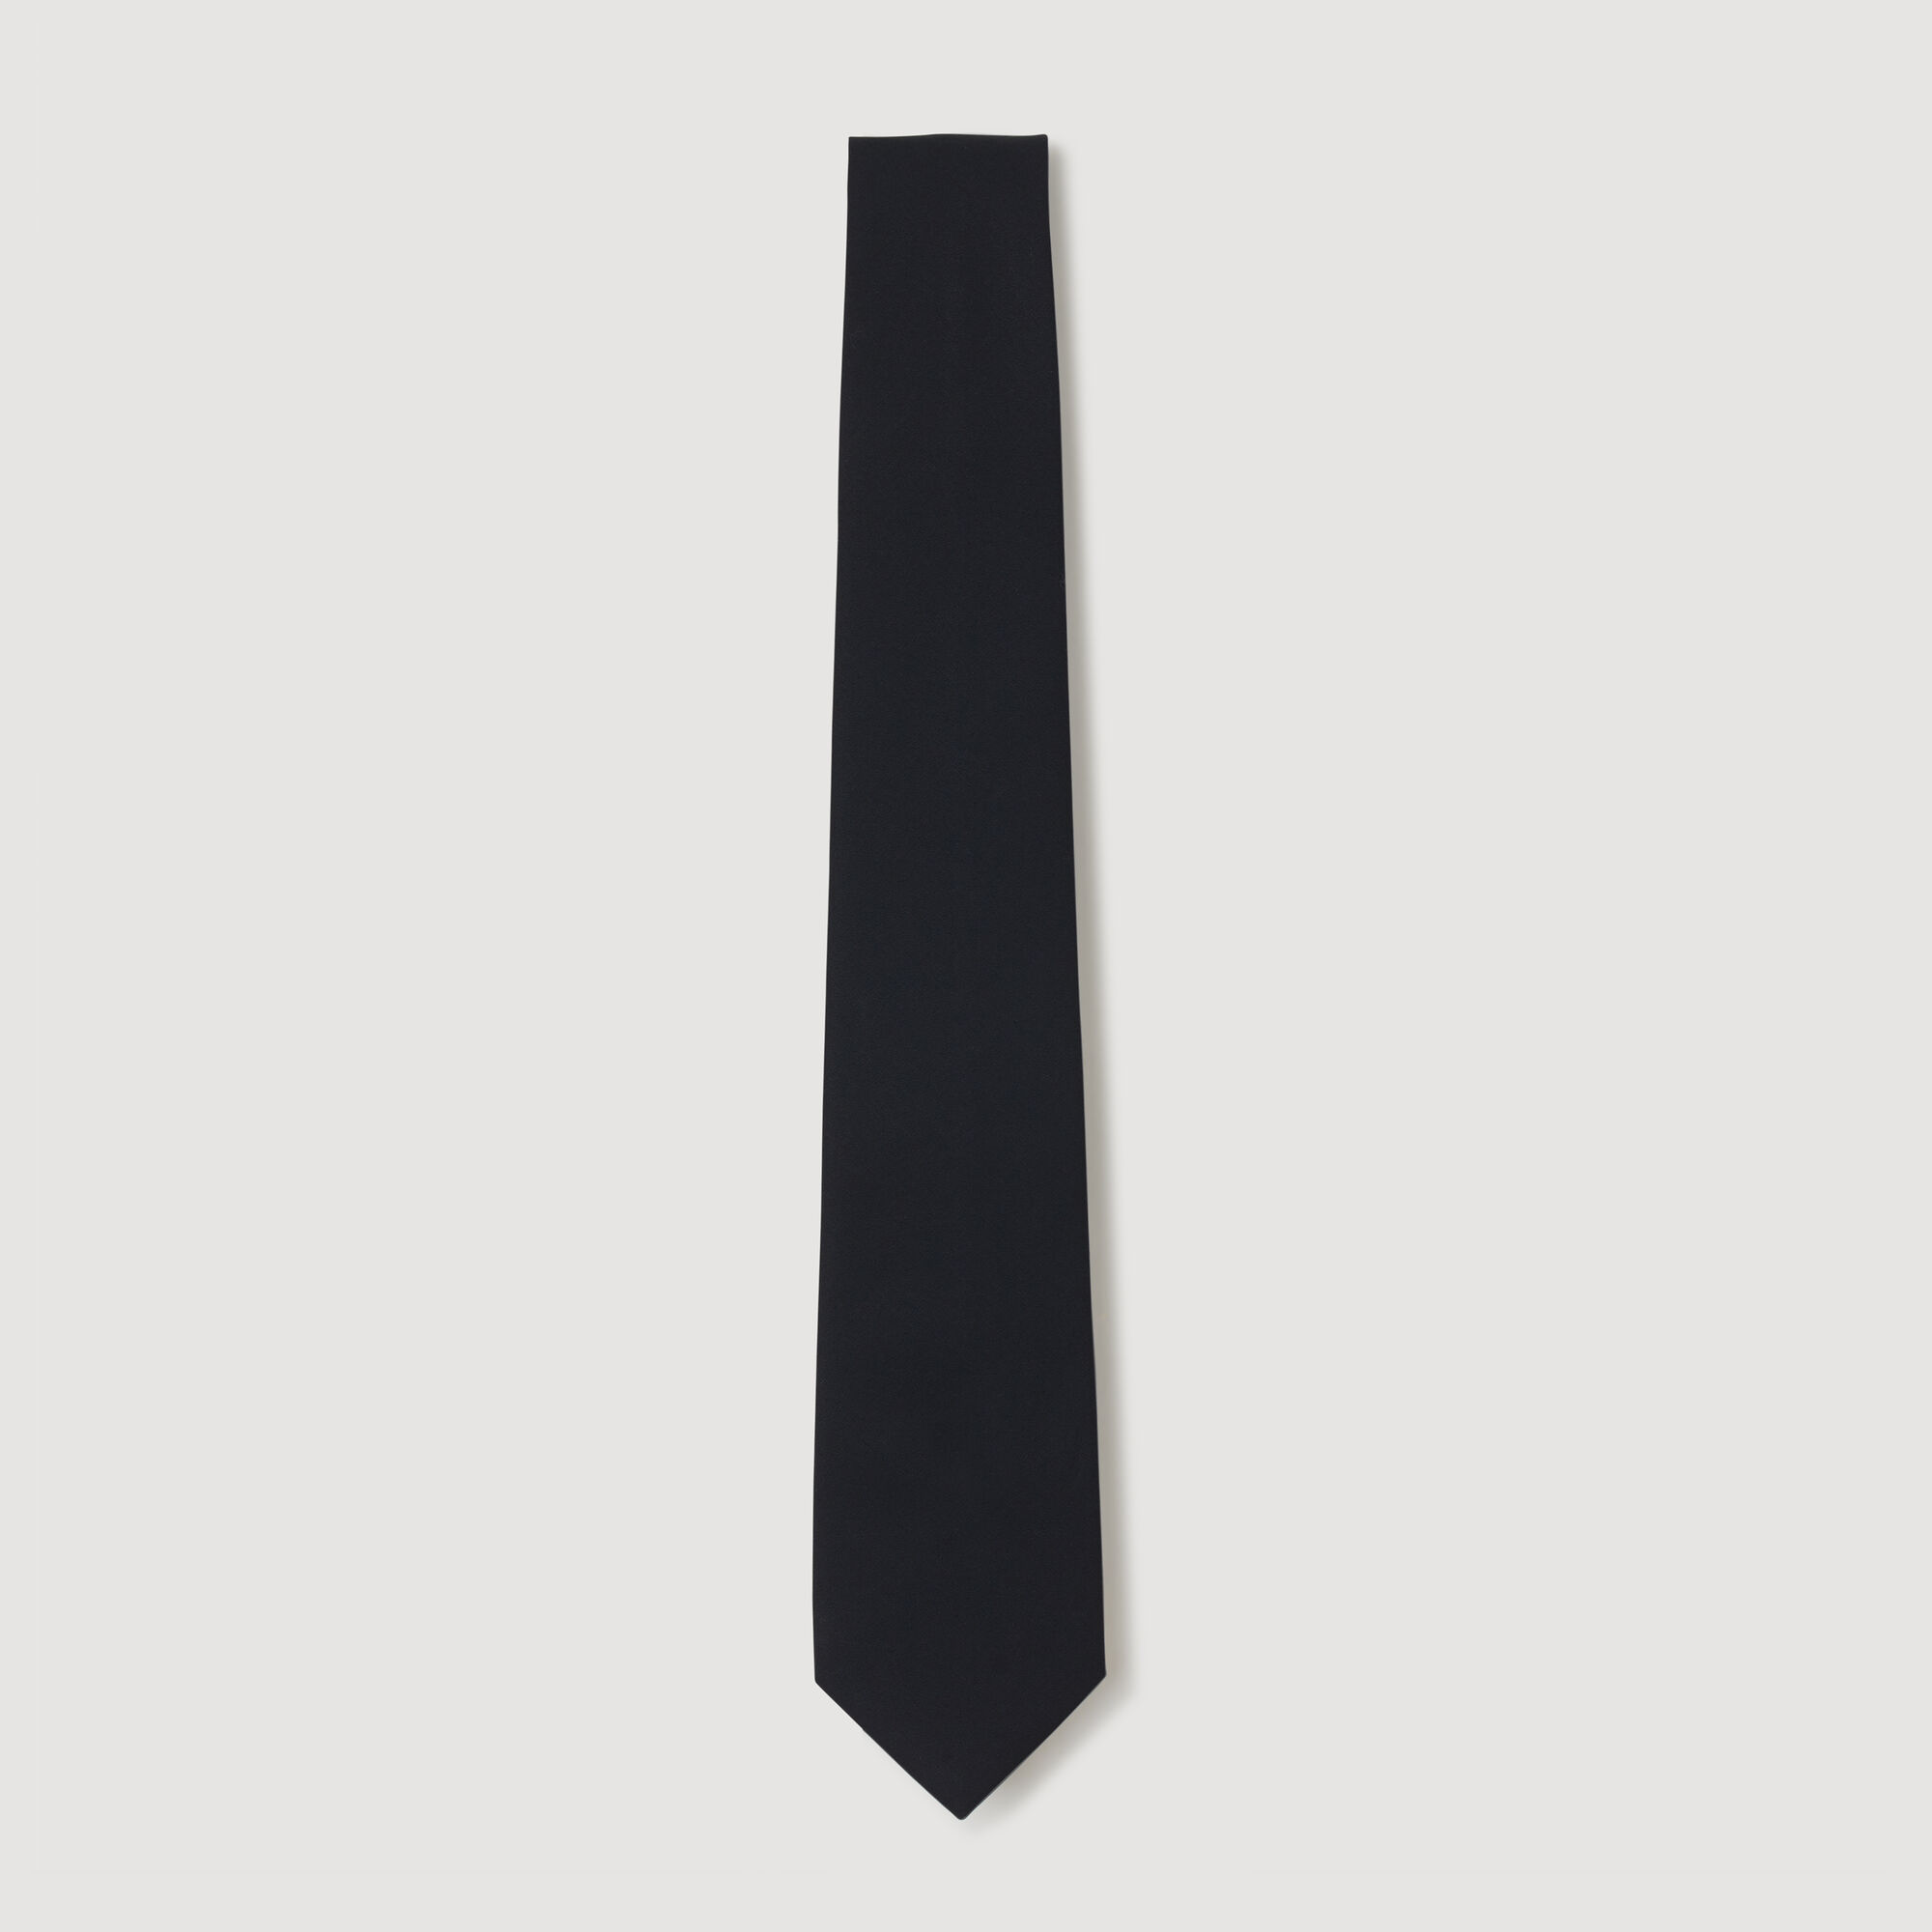 Wide tie